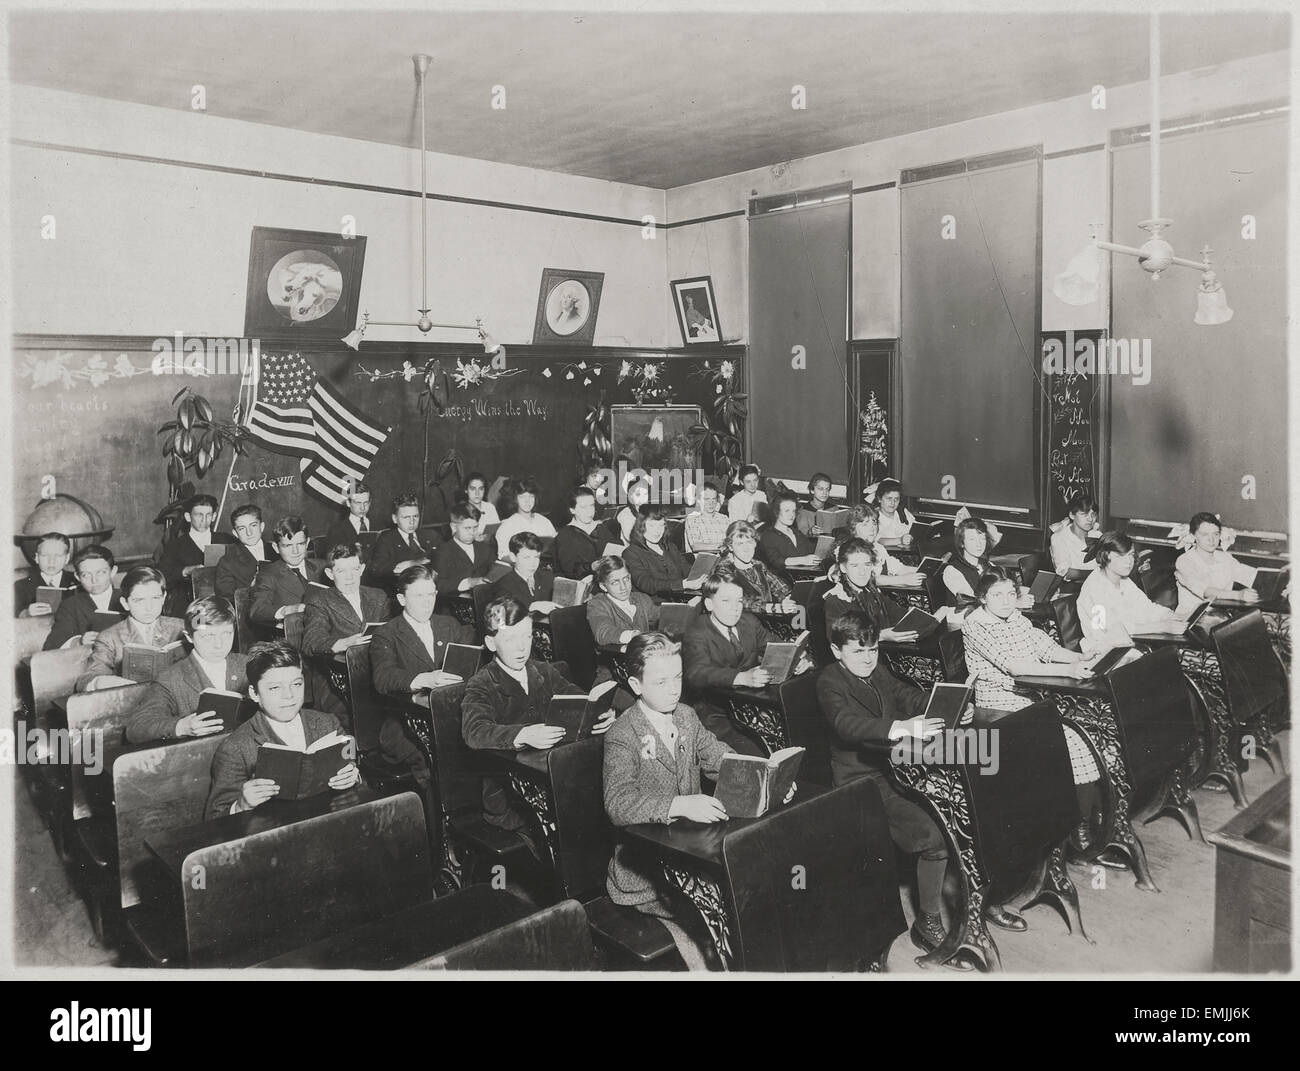 Students in Classroom, 8th Grade Portrait, USA, circa 1910's Stock Photo